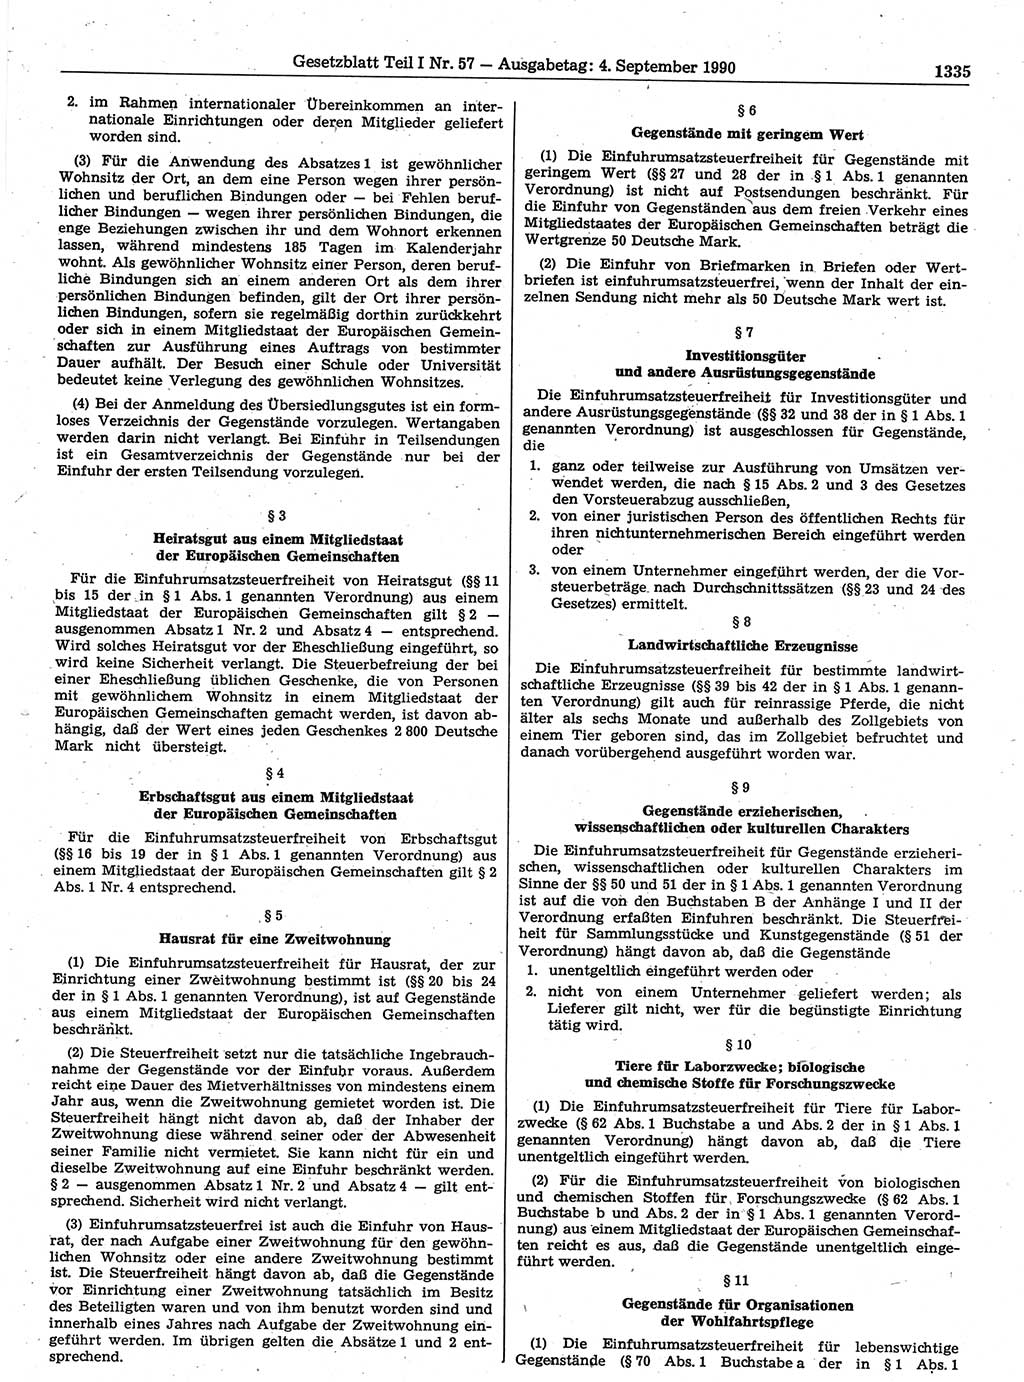 Gesetzblatt (GBl.) der Deutschen Demokratischen Republik (DDR) Teil Ⅰ 1990, Seite 1335 (GBl. DDR Ⅰ 1990, S. 1335)